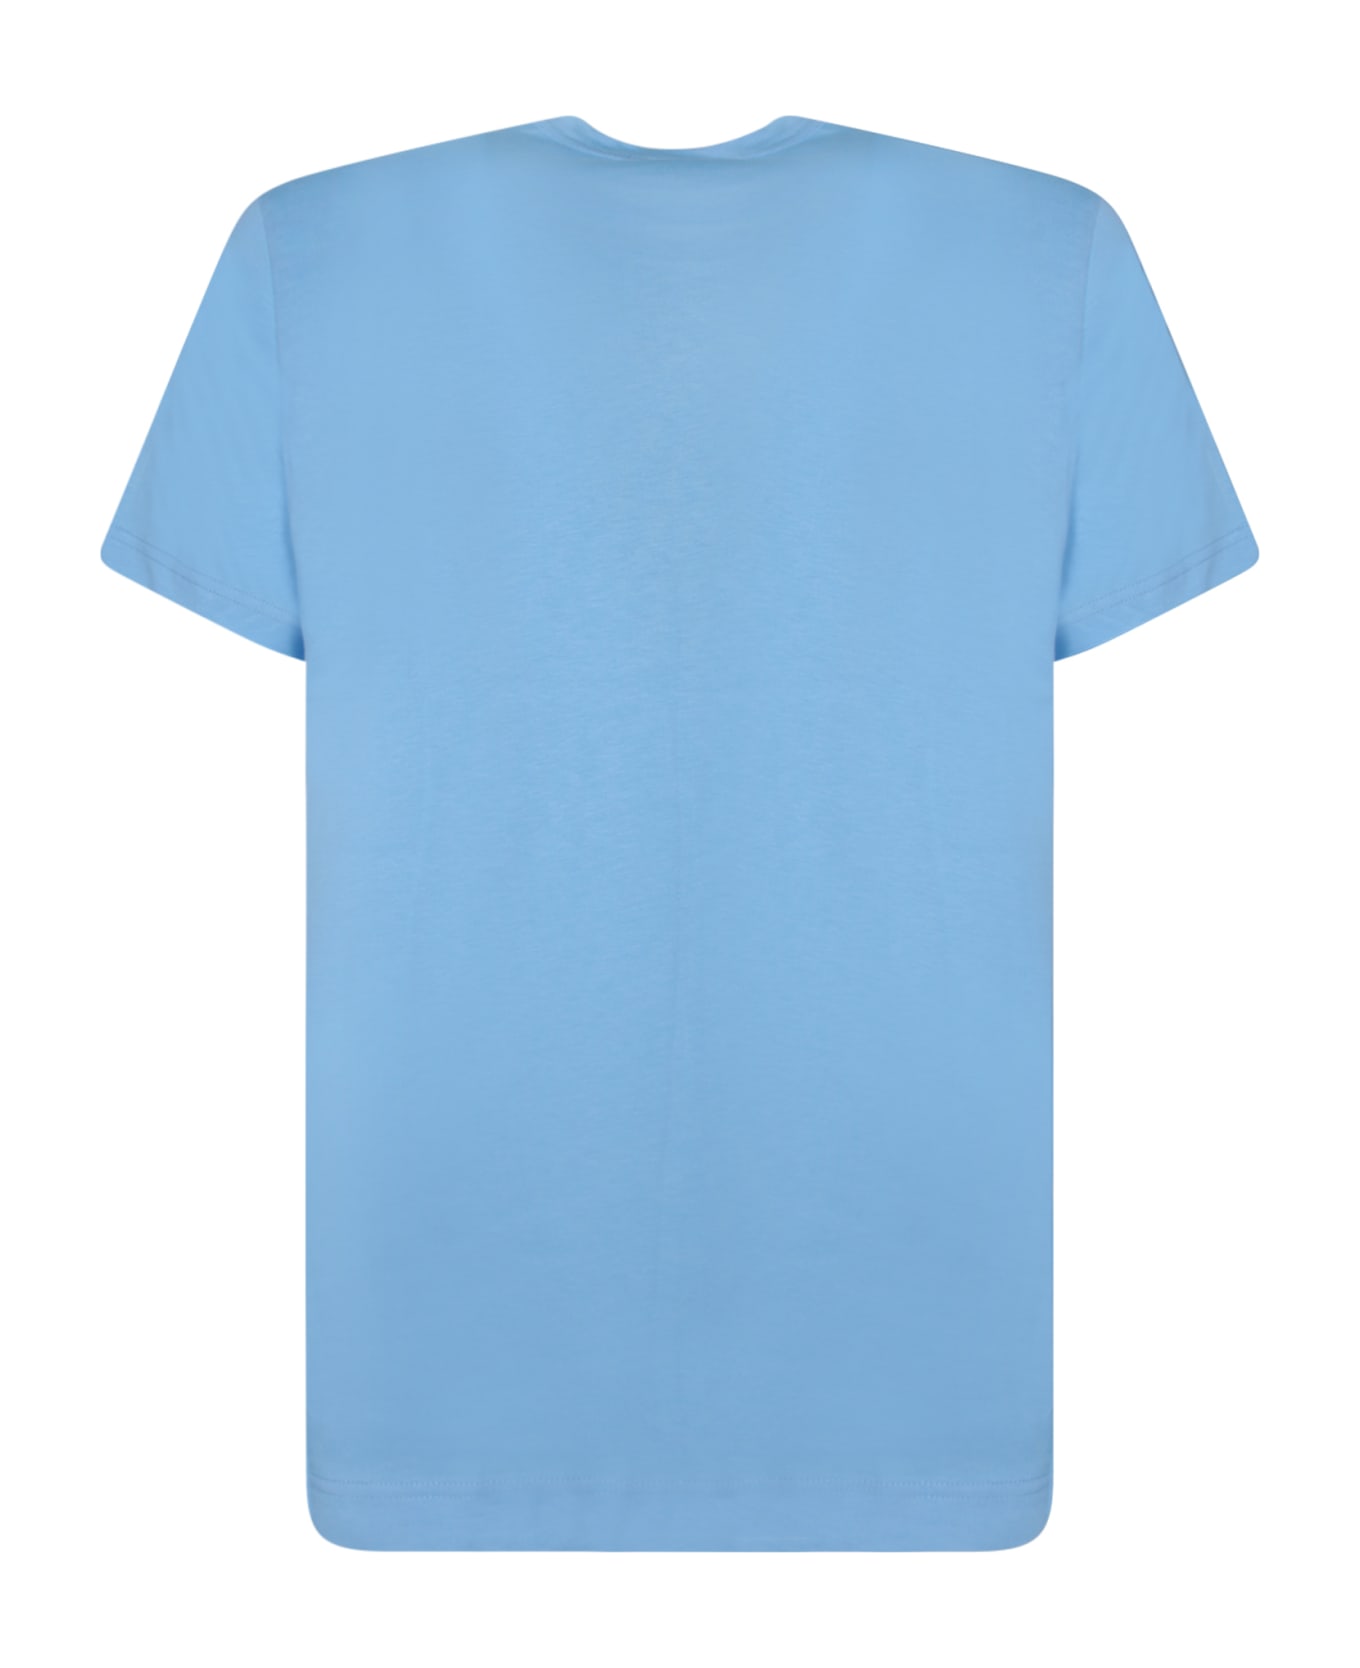 Comme des Garçons Shirt Regular Fit Light Blue T-shirt - Blue